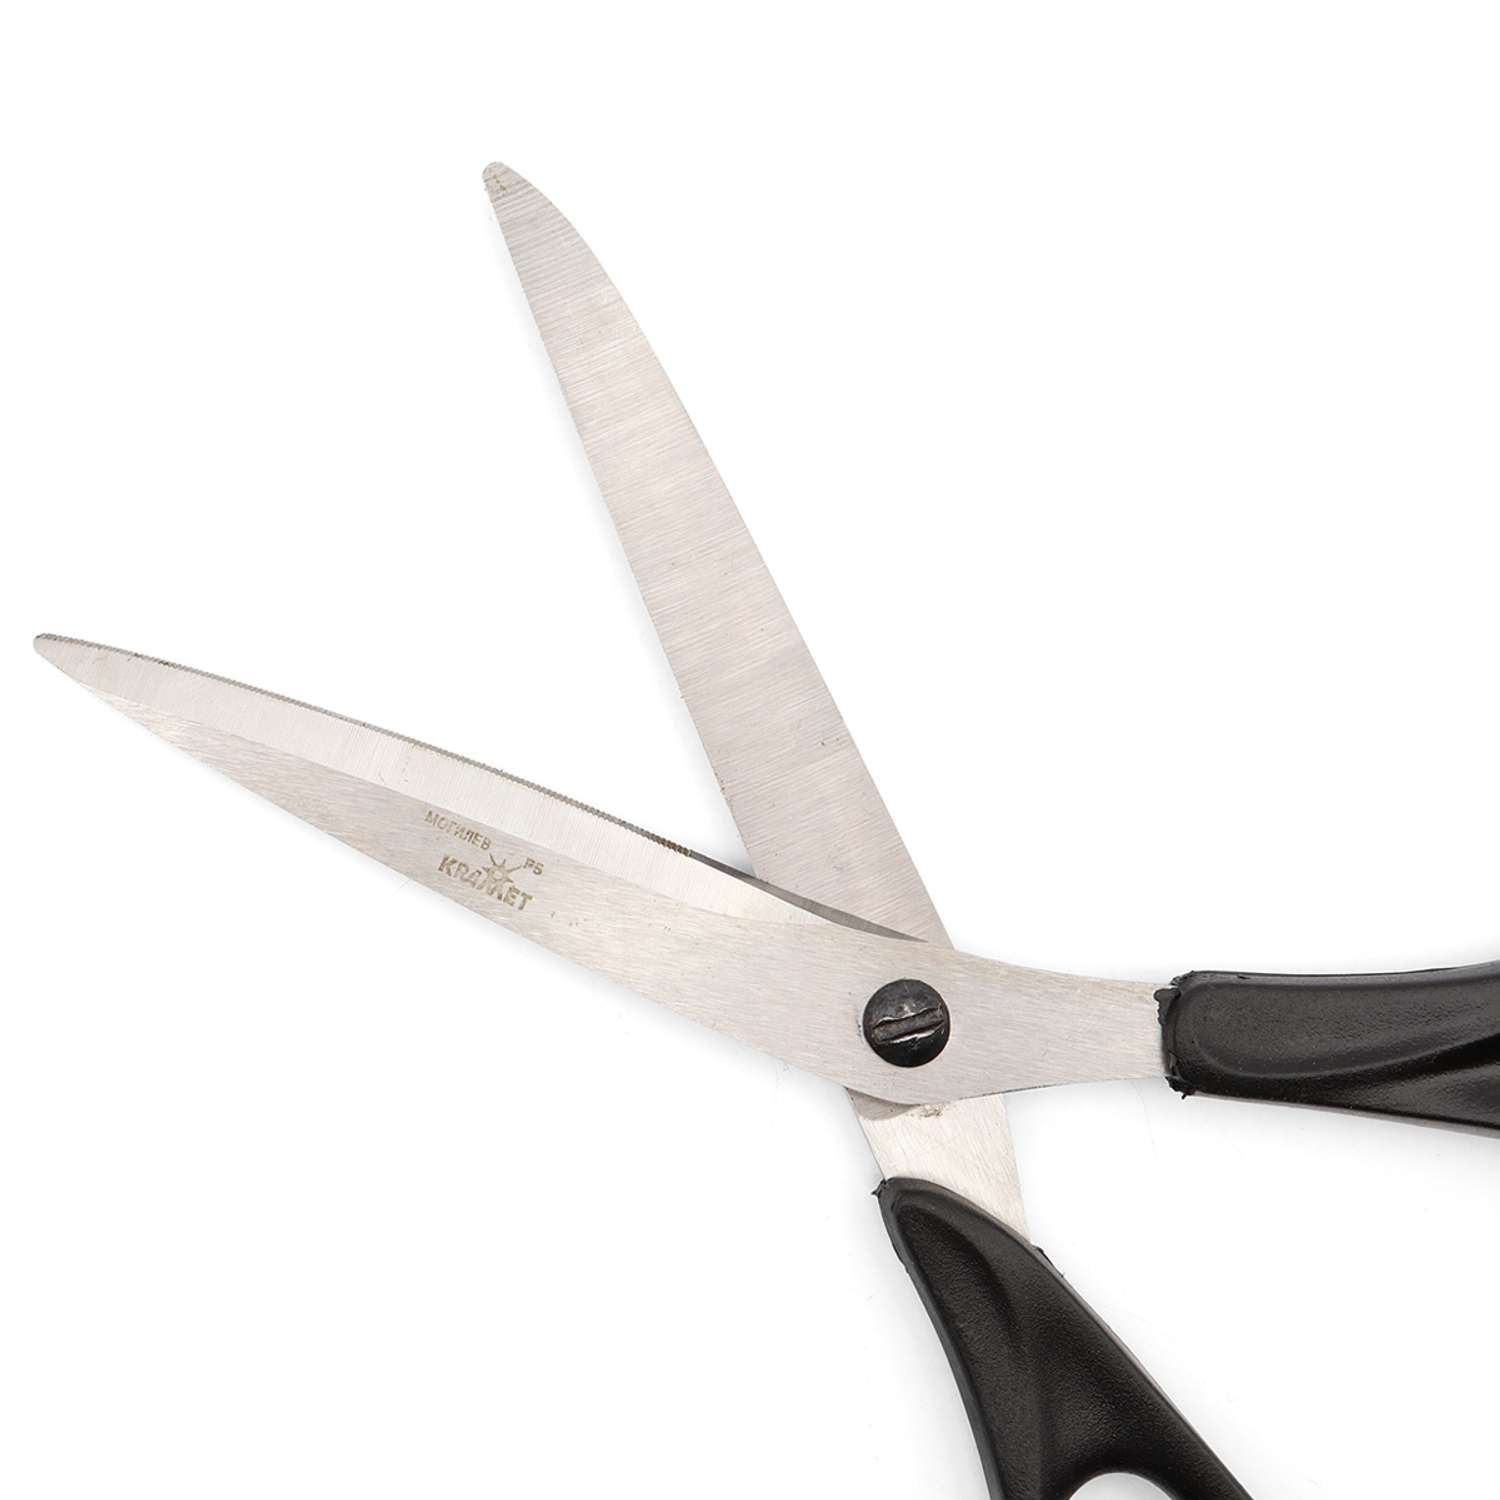 Ножницы портновские KARMET с микро насечкой стальные с винтом для регулировки хода 21.5 см - фото 2